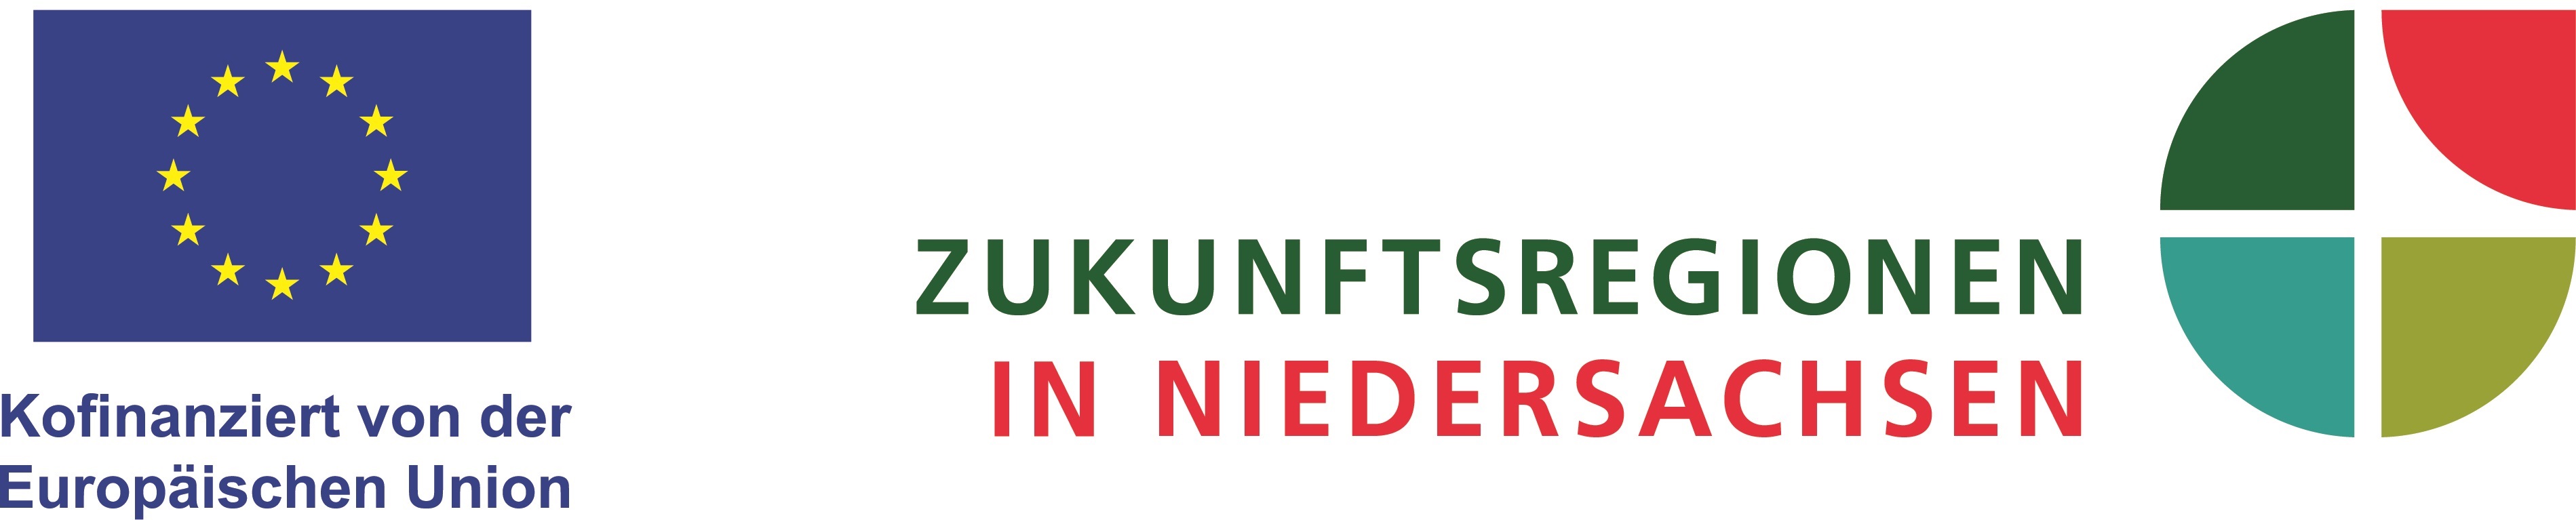 Logo der Europäischen Union und der Zukunftsregionen in Niedersachsen